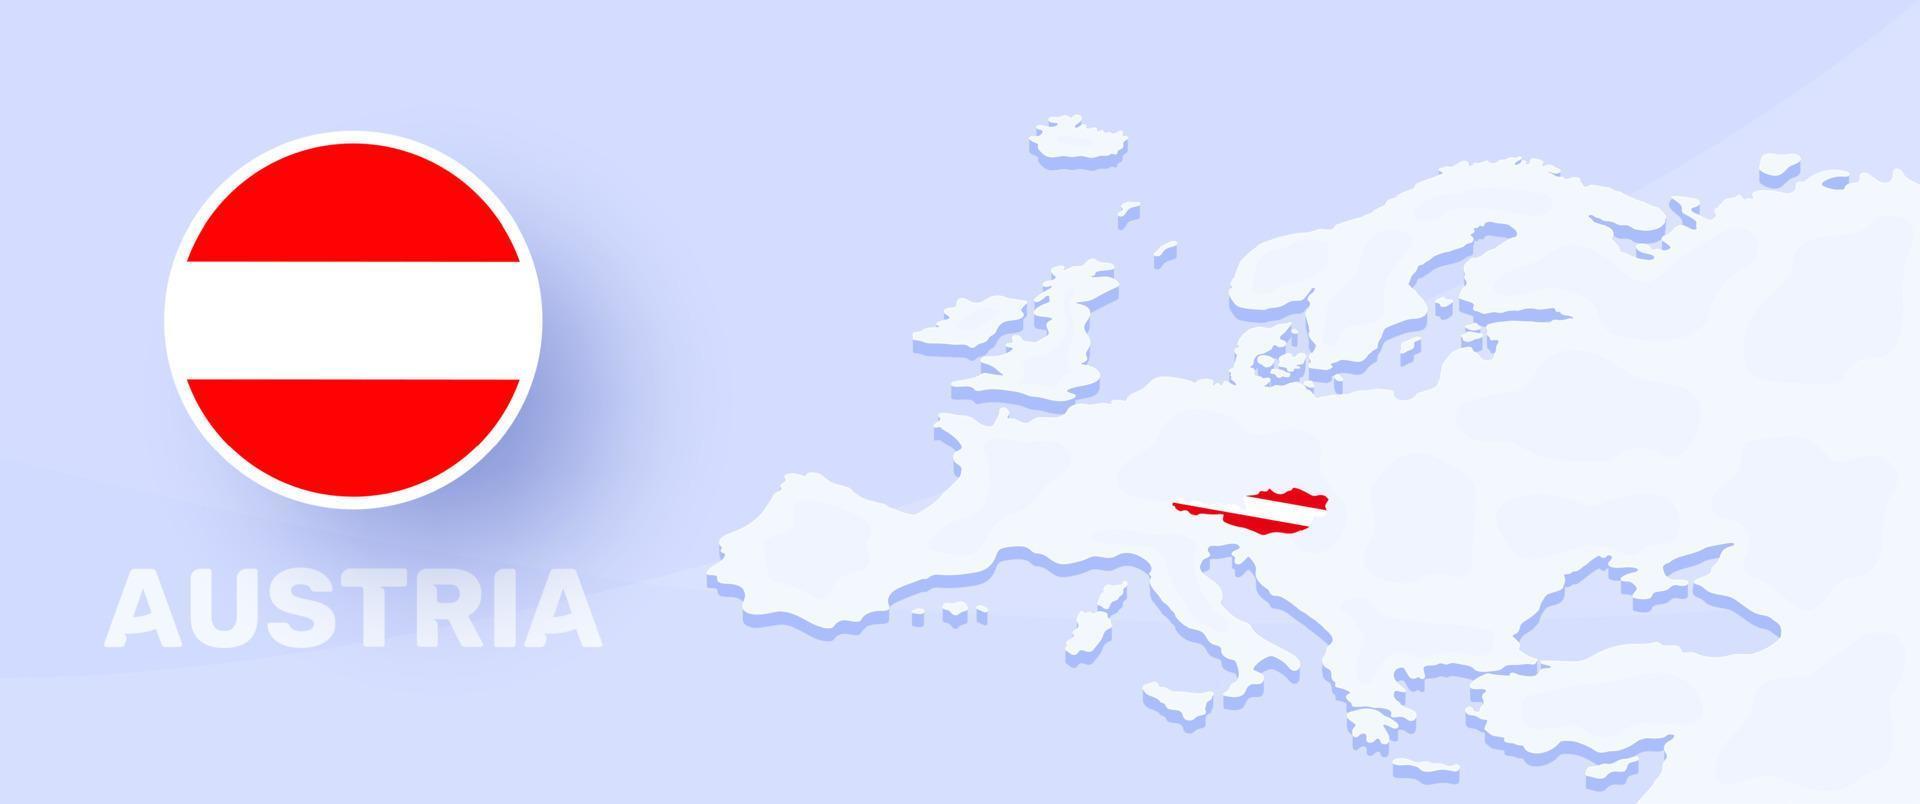 bandera de la bandera del mapa de austria. ilustración vectorial con un mapa de europa y país destacado austria con bandera nacional vector